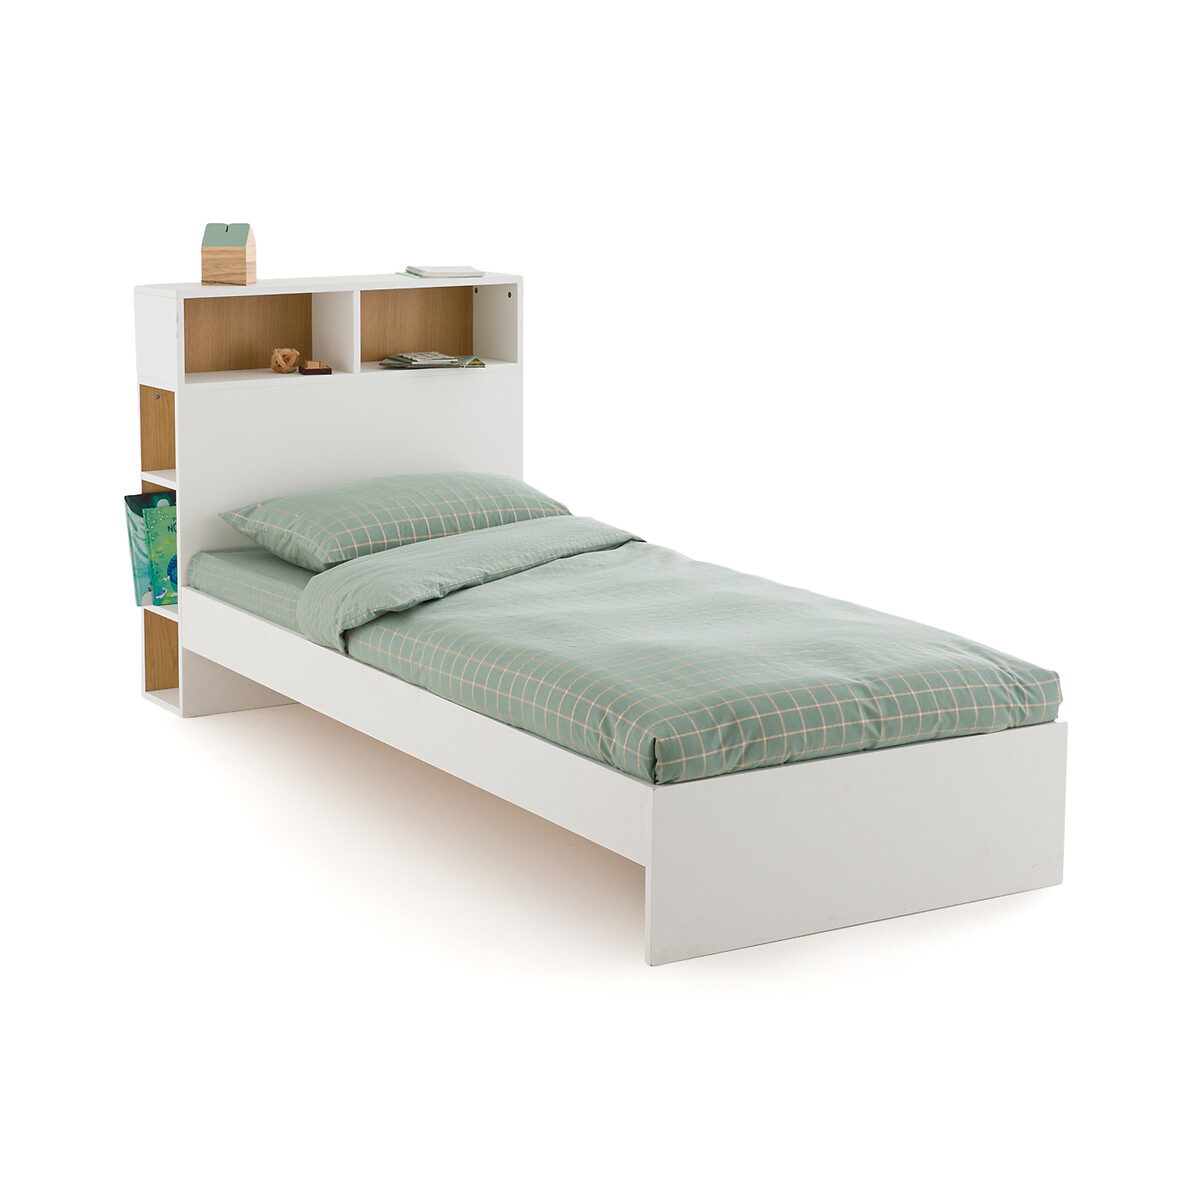 кровать и кроватное основание из ротанга arsel 90 x 190 см бежевый Кроватка детская с кроватным основанием BIFACE 90 x 190 см белый